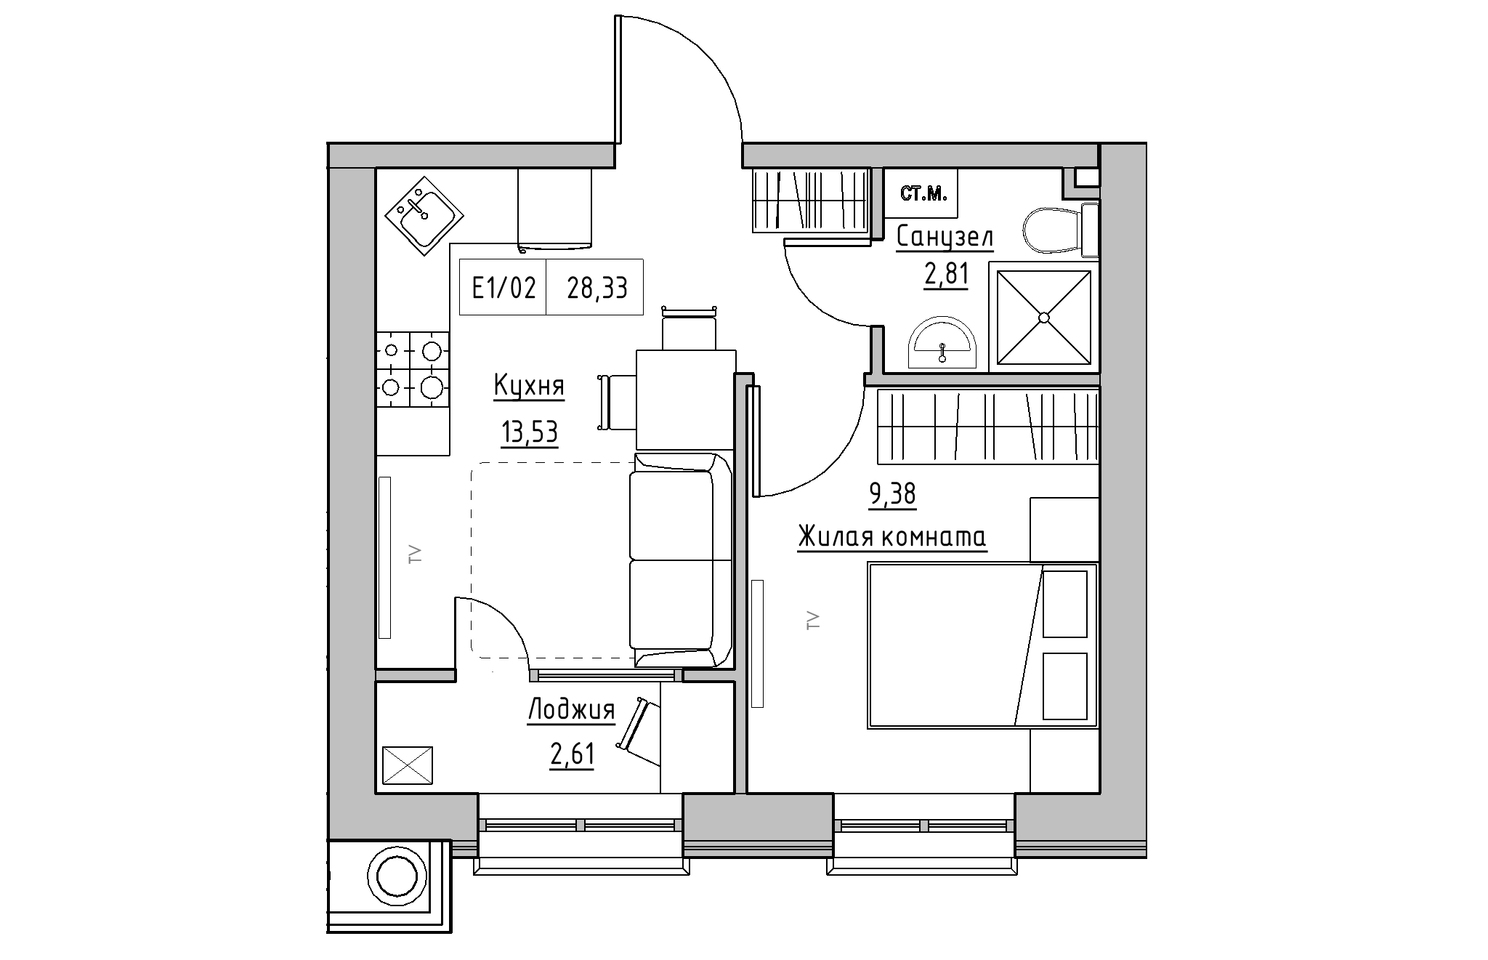 Планировка 1-к квартира площей 28.33м2, KS-010-05/0001.